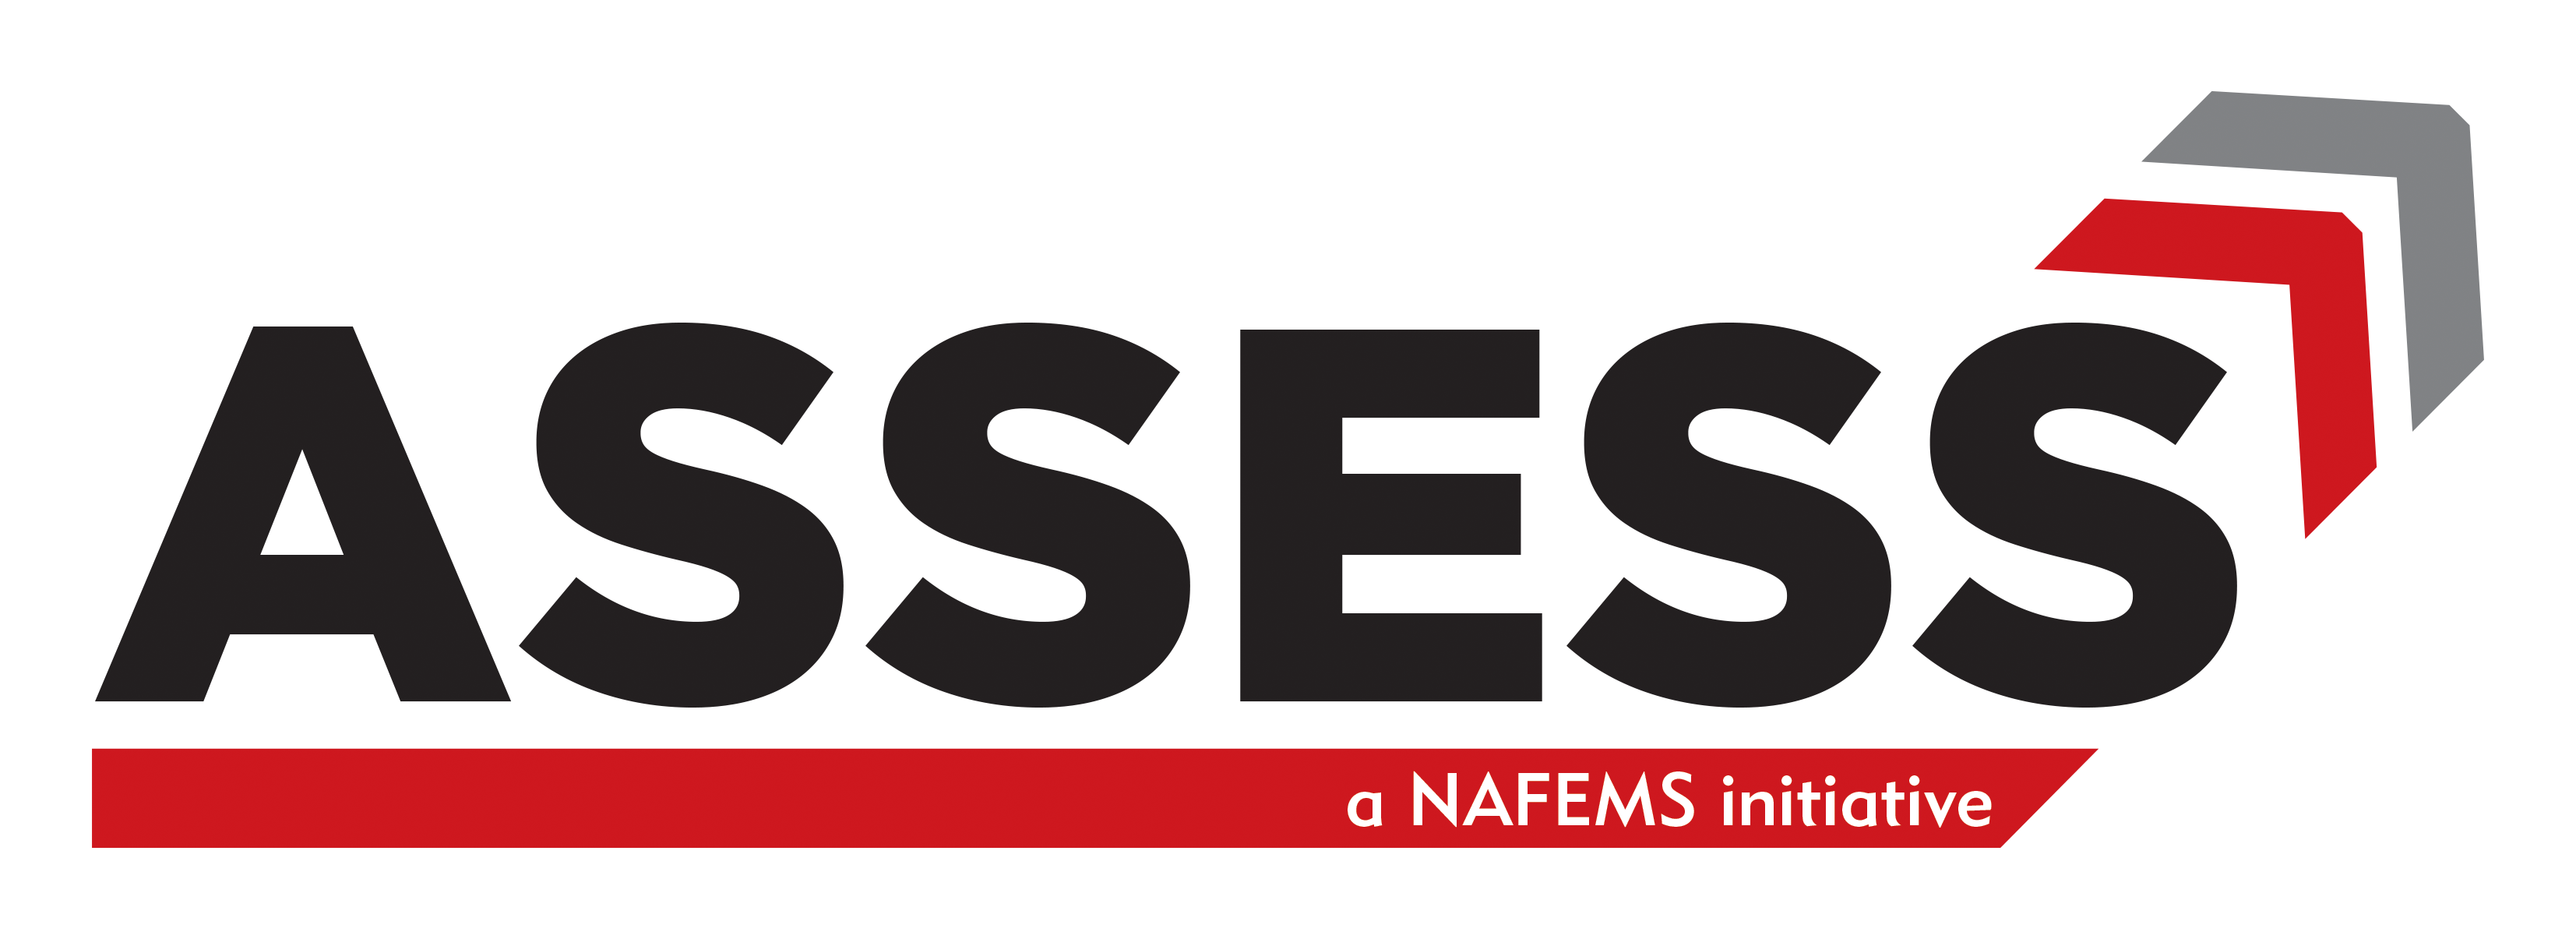 NAFEMS ASSESS Initiative